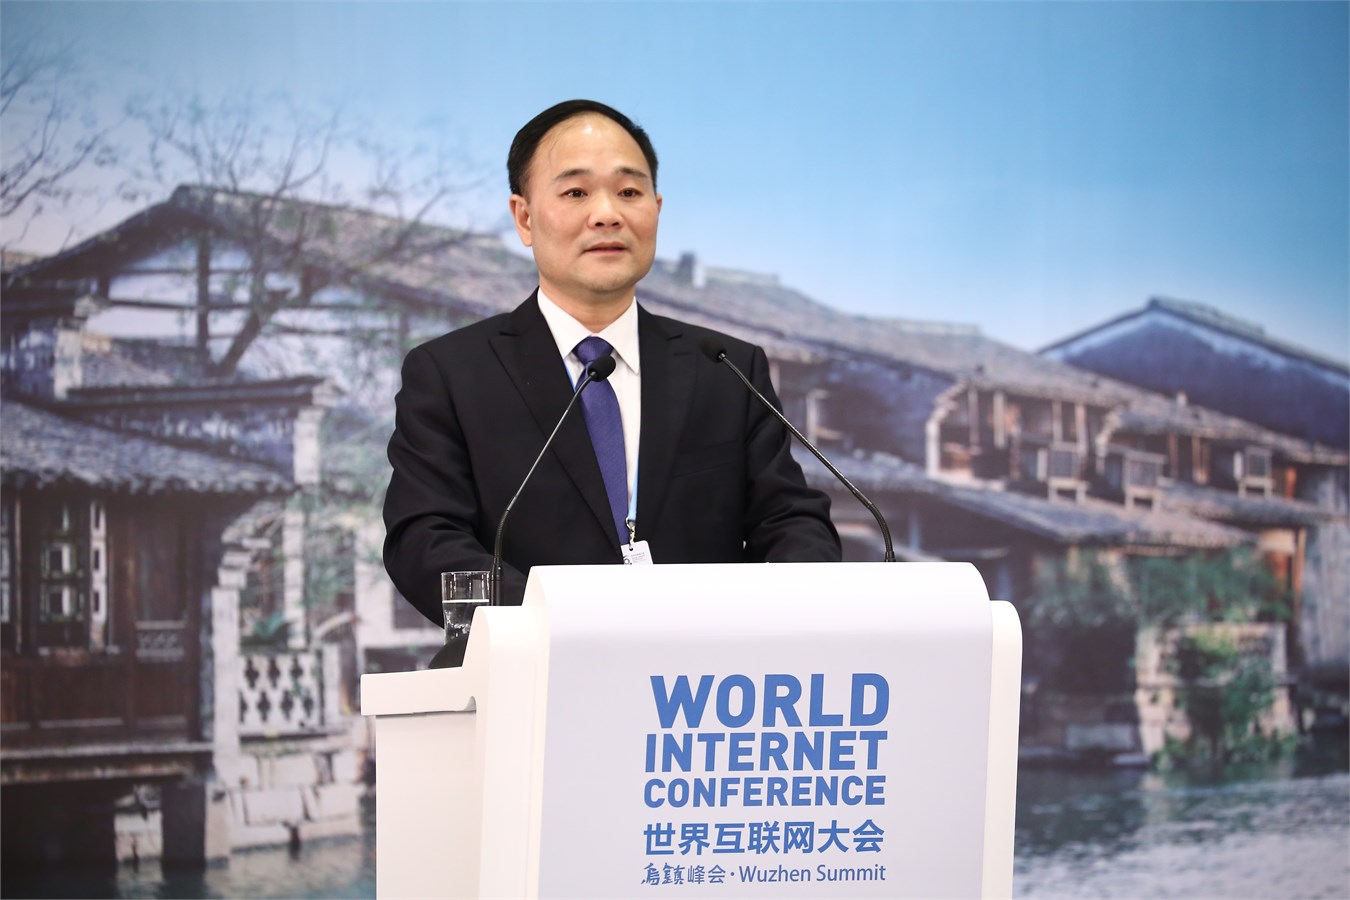 世界互联网大会，李书福作为汽车行业唯一代表发表讲话